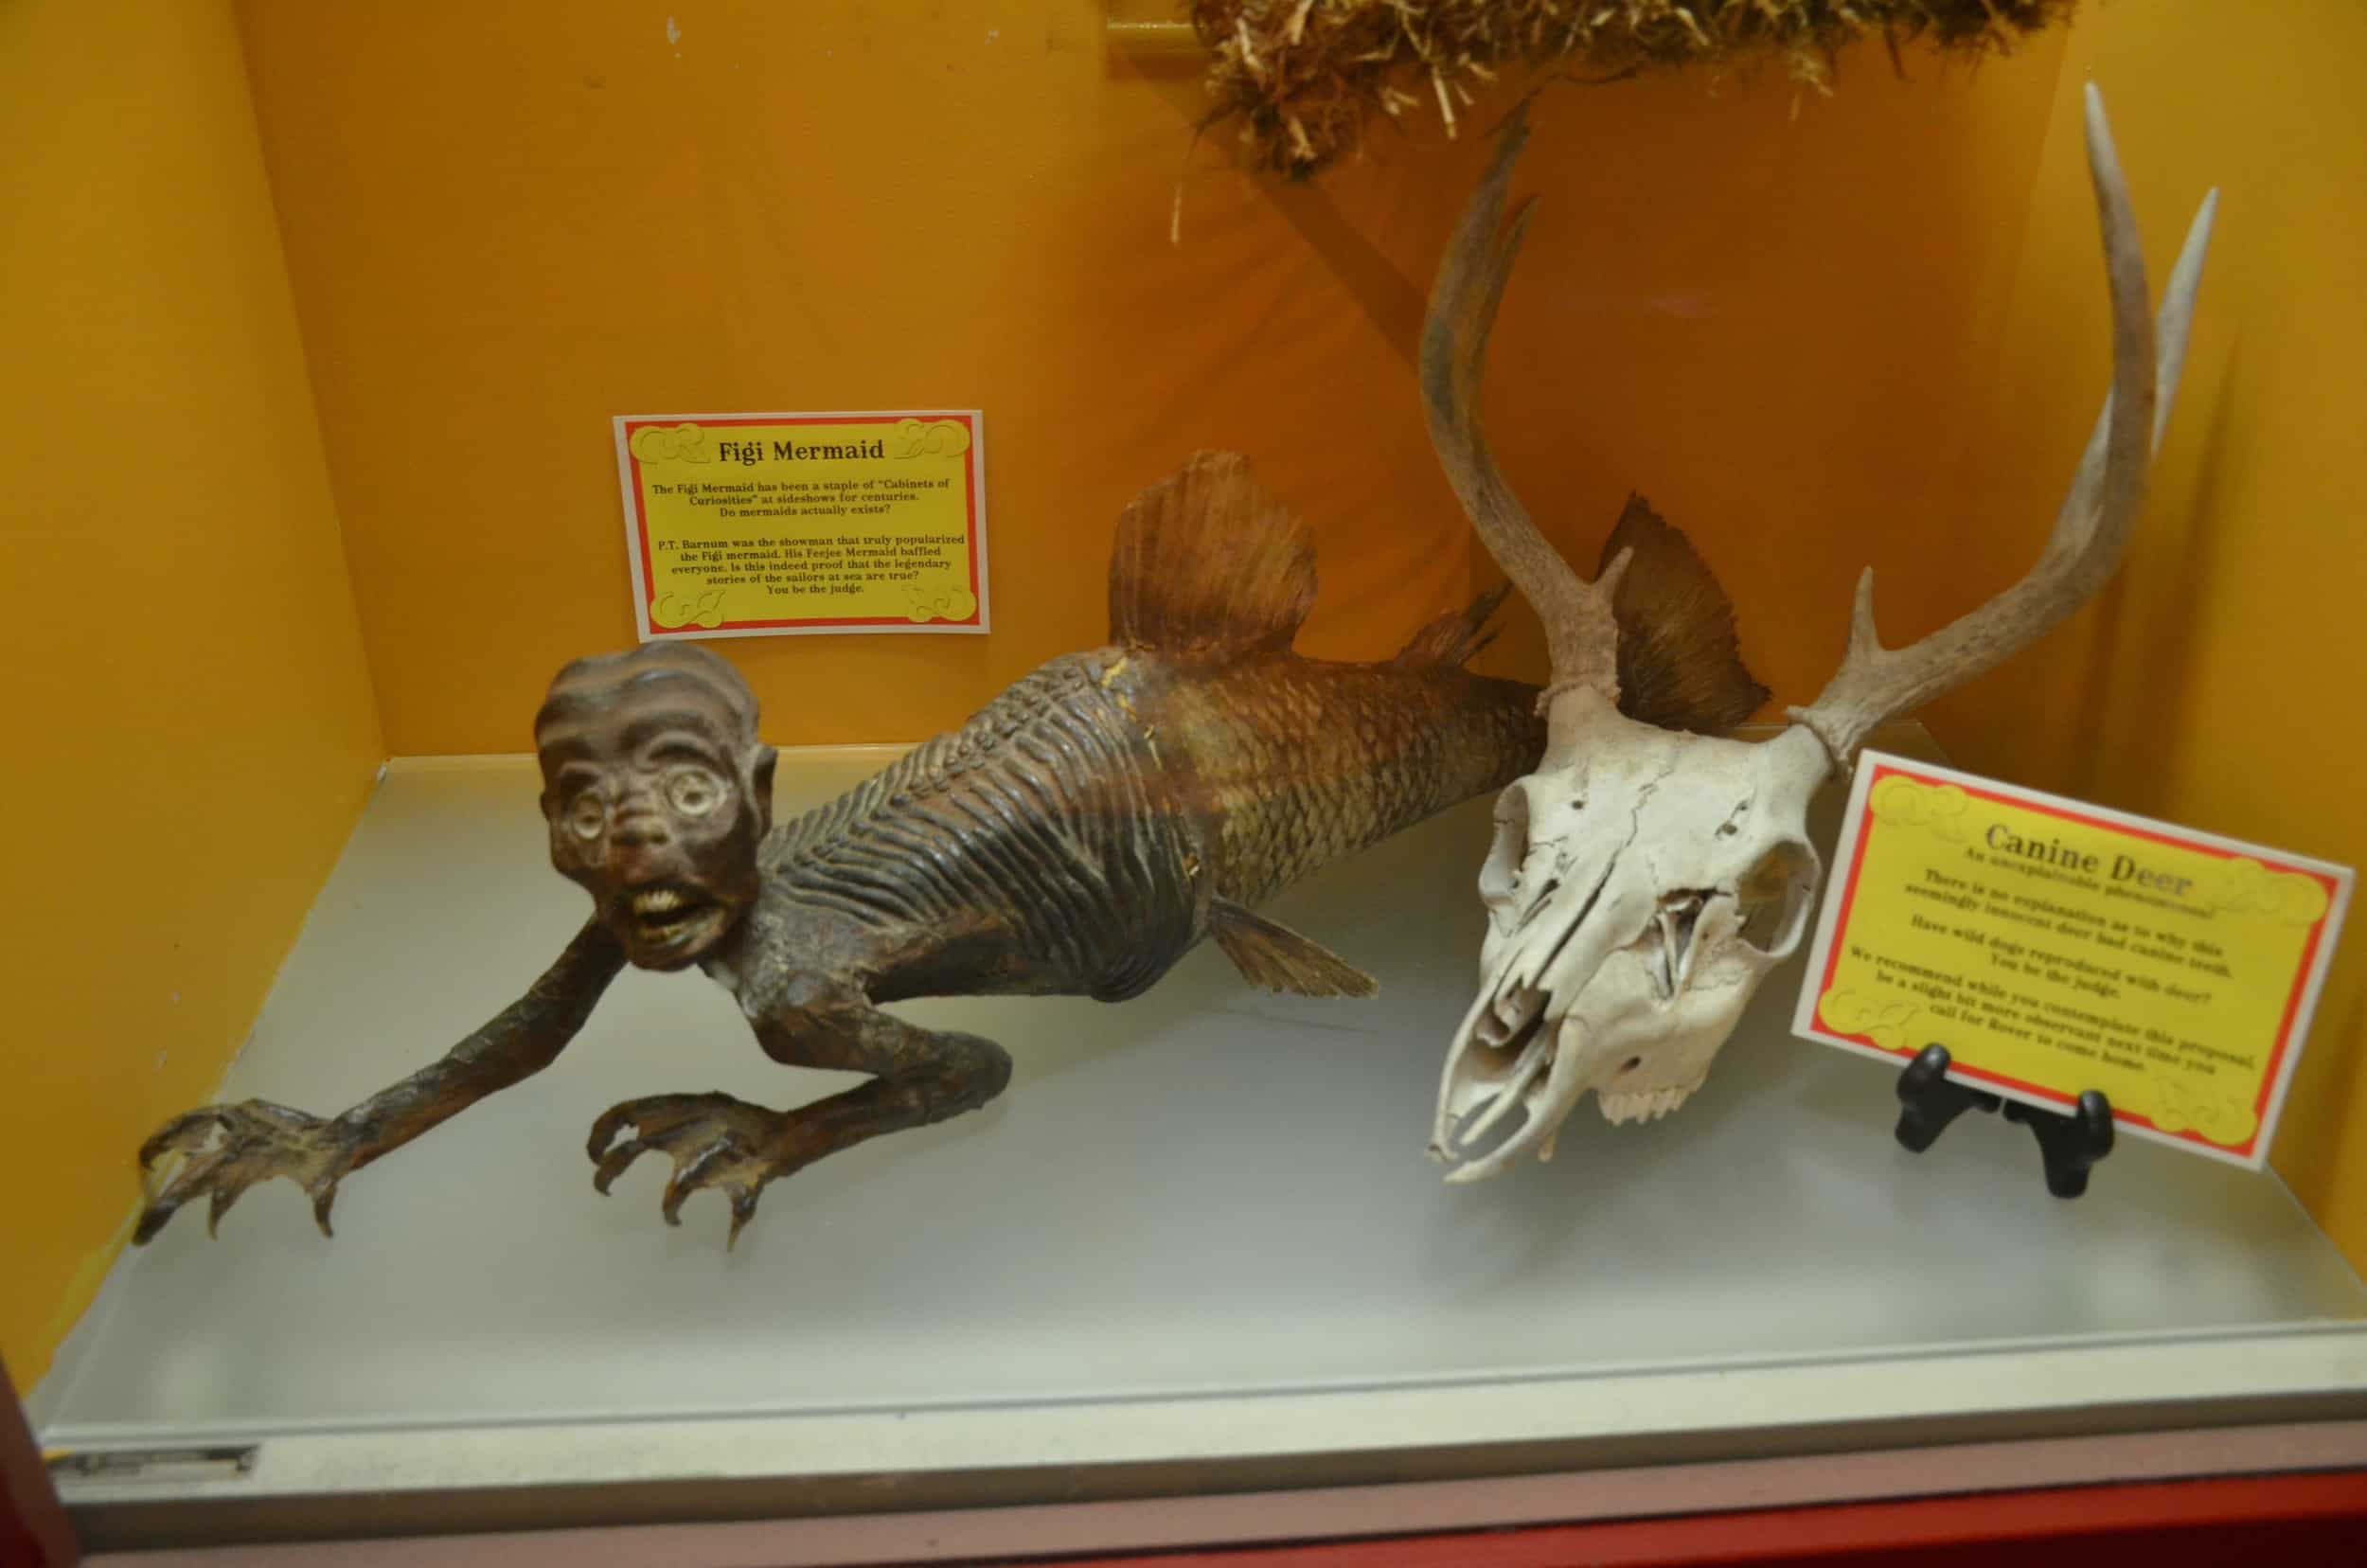 Figi mermaid and canine deer at the Buckhorn Museum in San Antonio, Texas